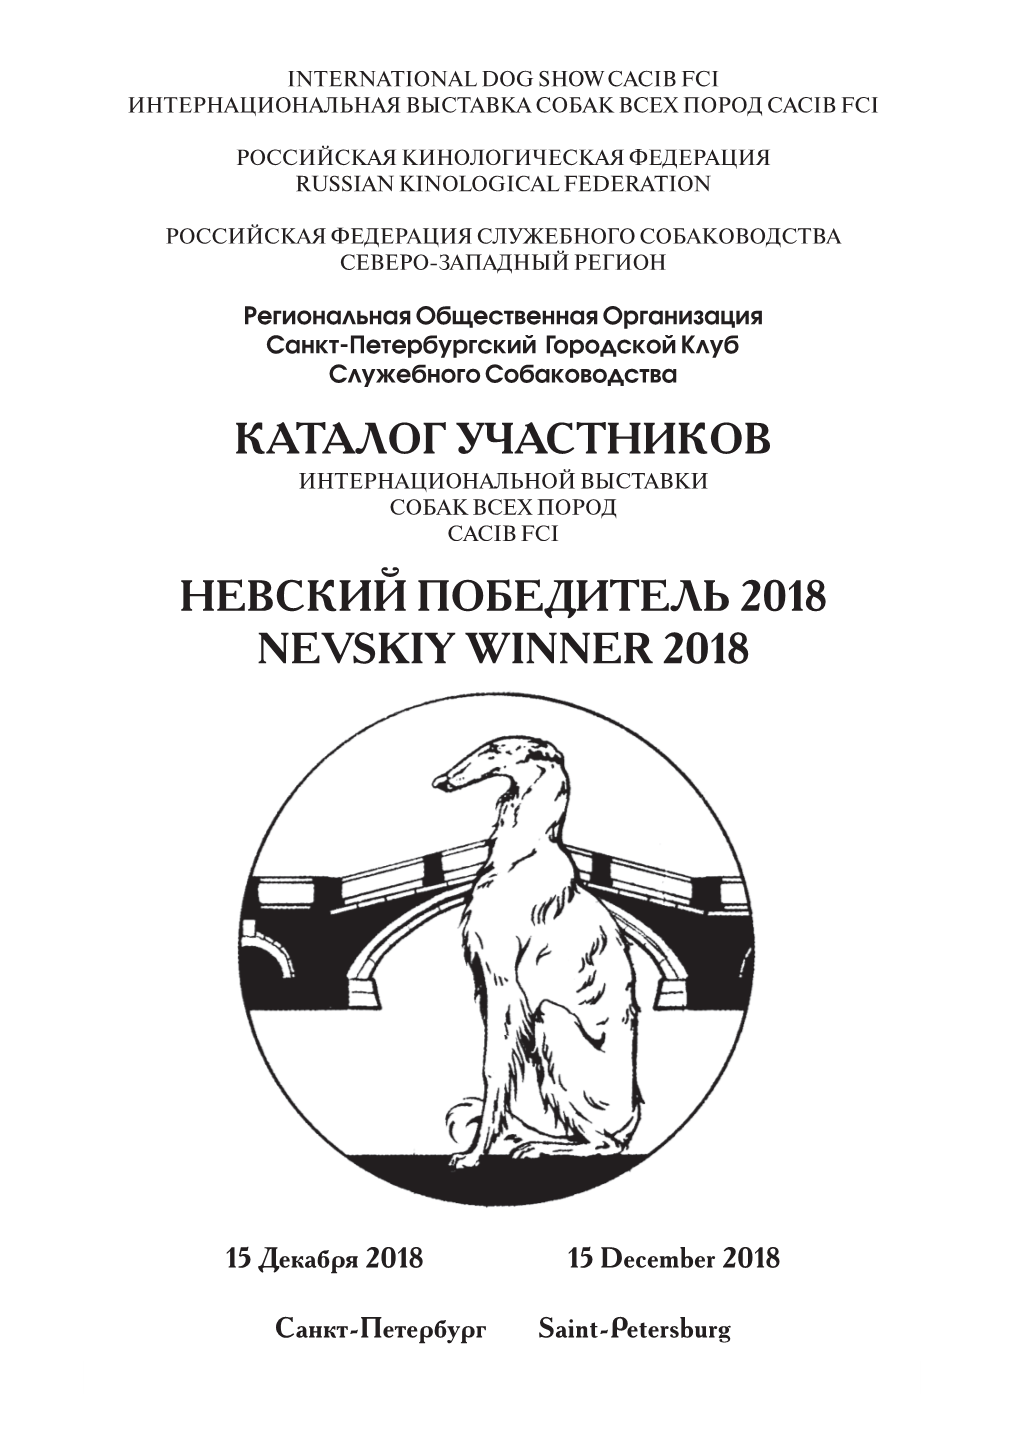 Каталог Участников Невский Победитель 2018 Nevskiy